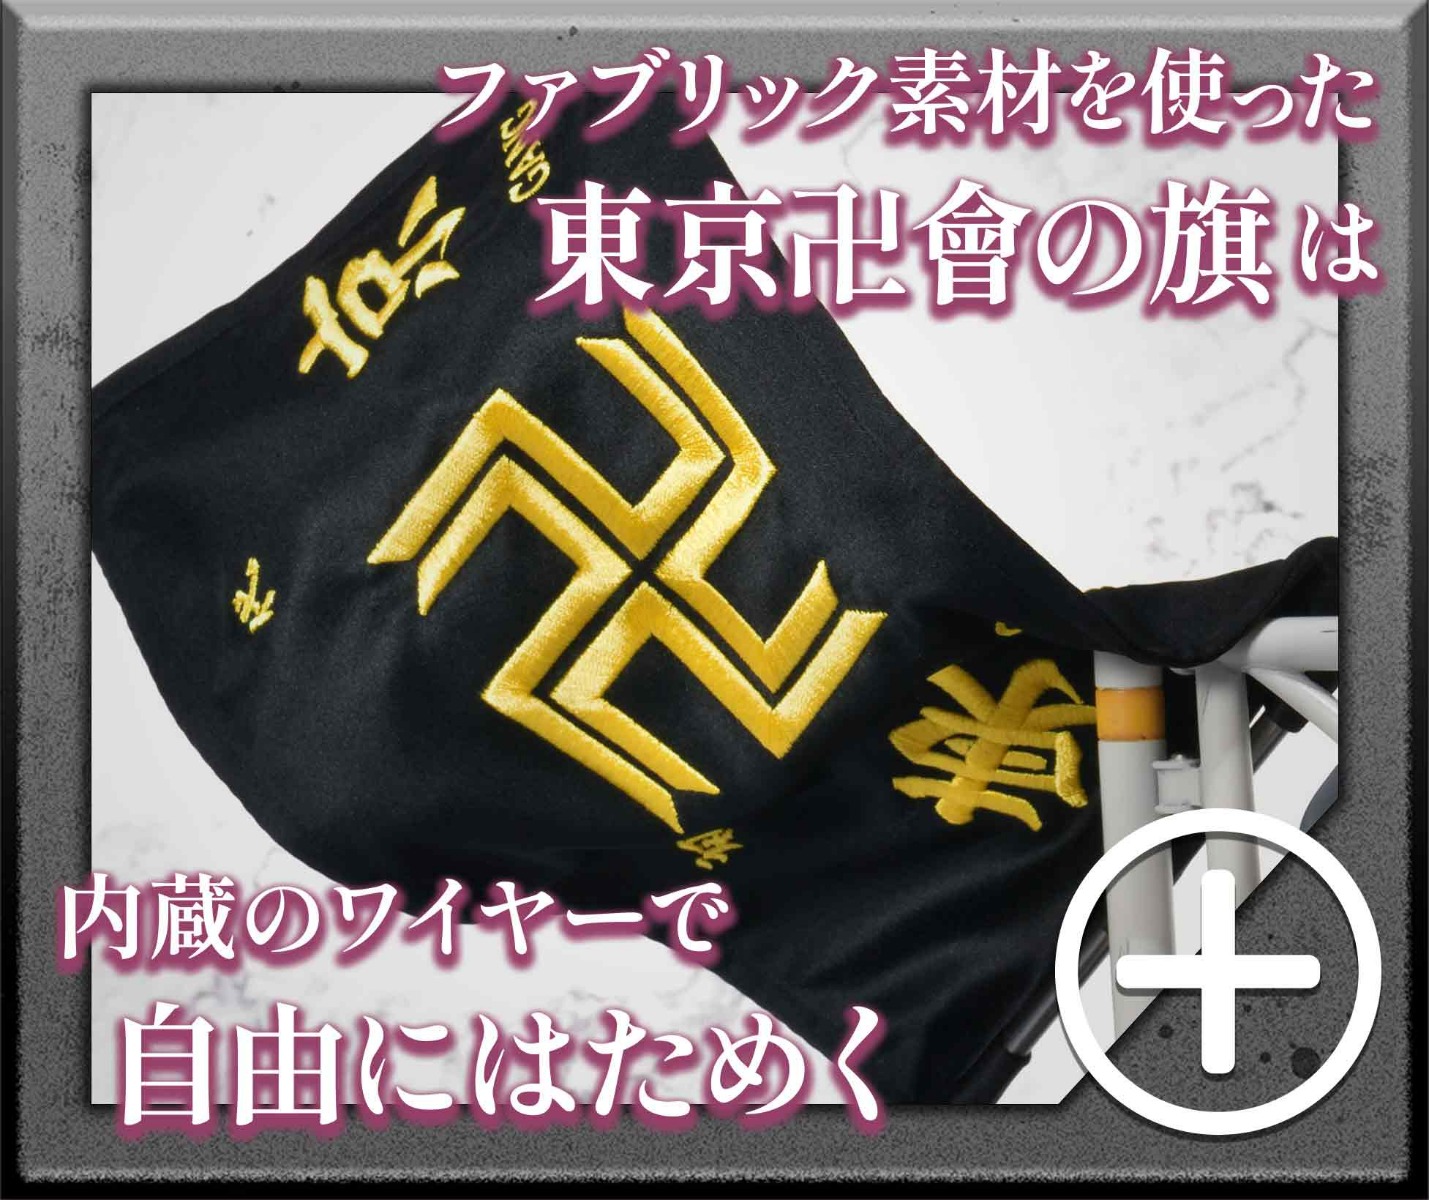 ファブリック素材を使った東京卍會の旗は内蔵のワイヤーで自由にはためく　sp